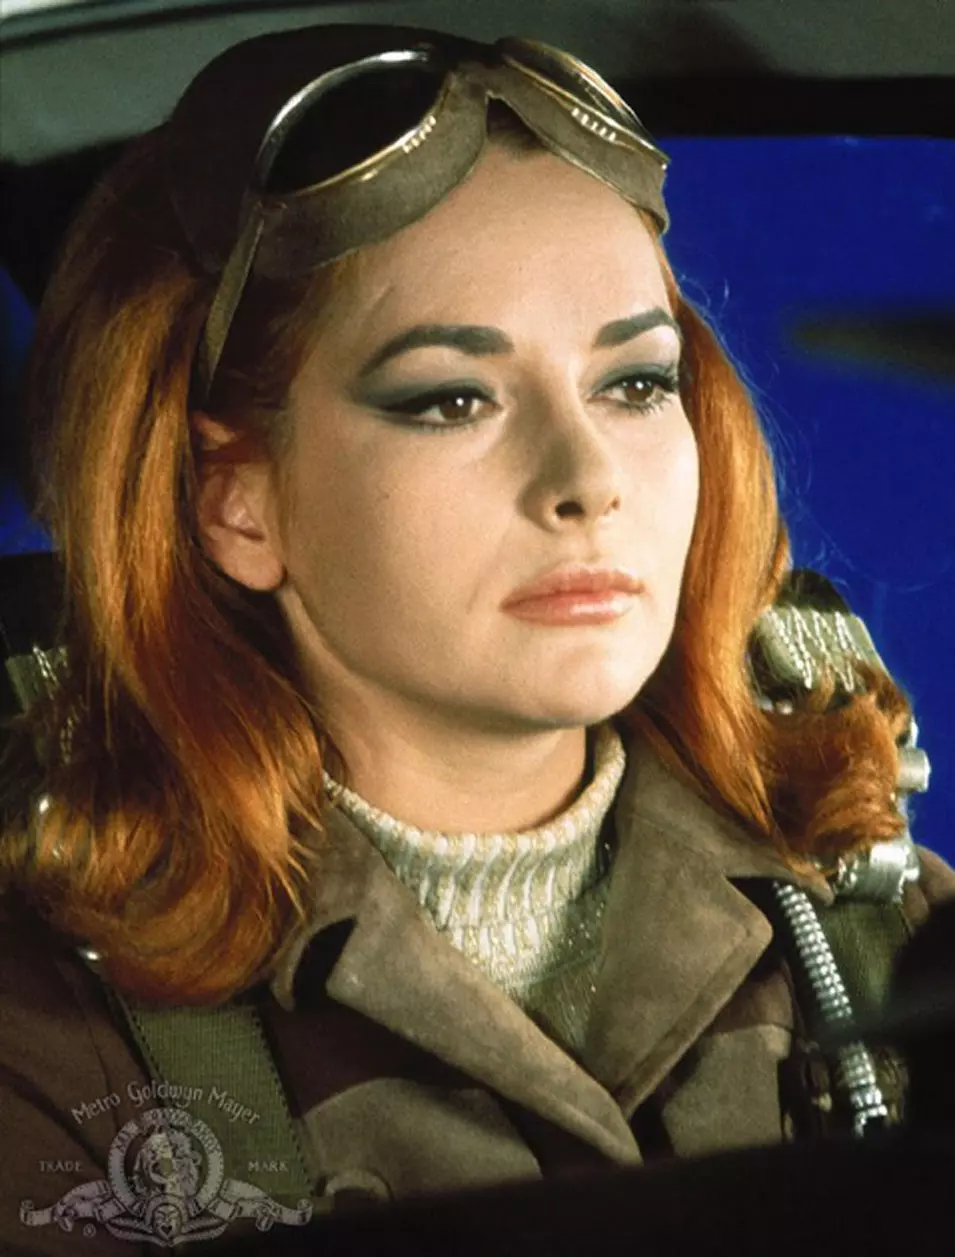 קארין דור מגלמת את הלגה ברנדט בסרט 'אתה חי רק פעמיים', 1976